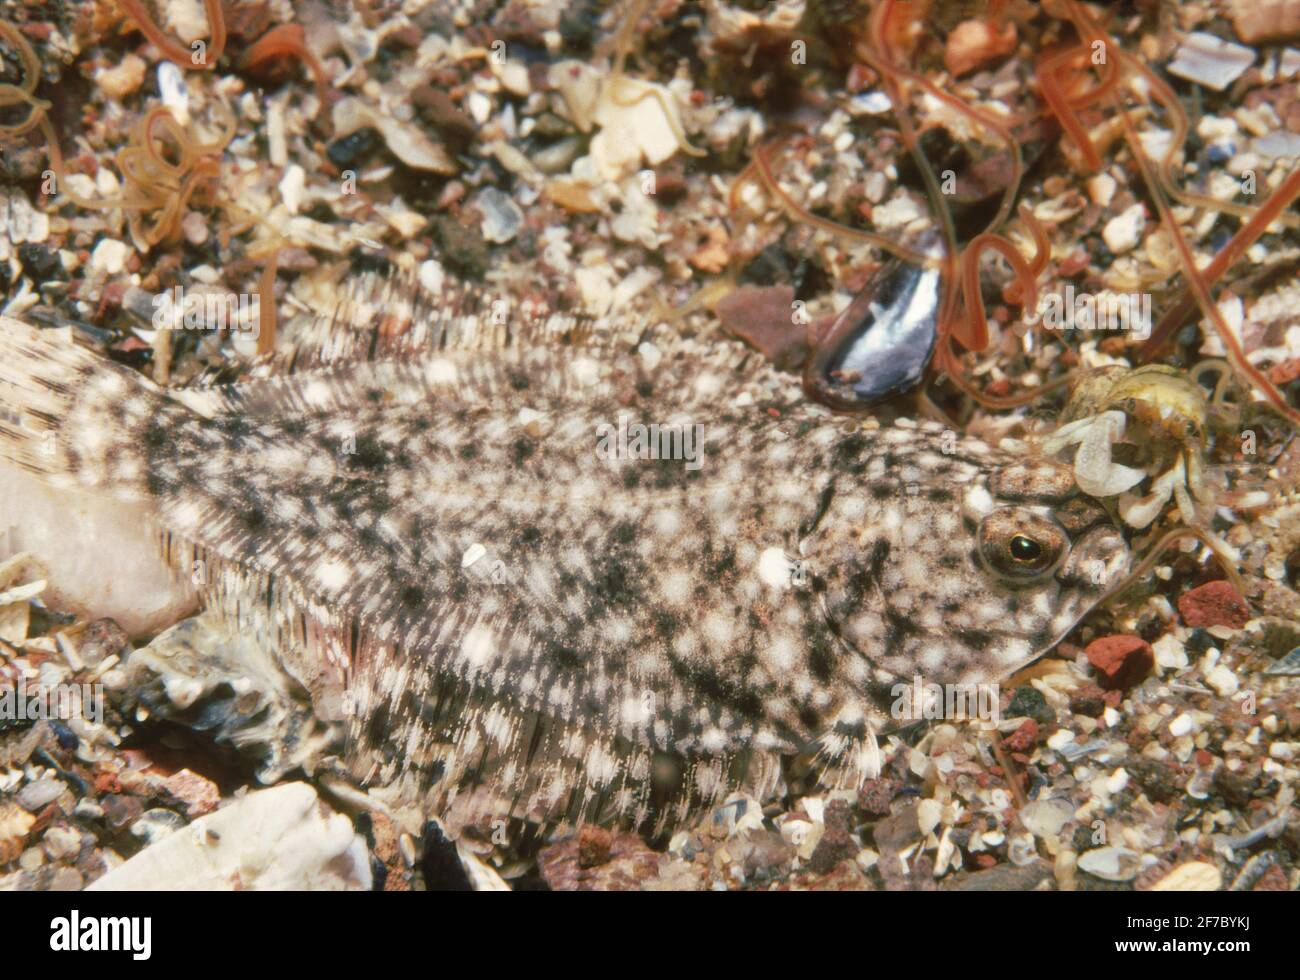 Passera di mare (Pleuronectes platessa) pesce giovane solo poche settimane dopo l'insediamento, Regno Unito. Foto Stock